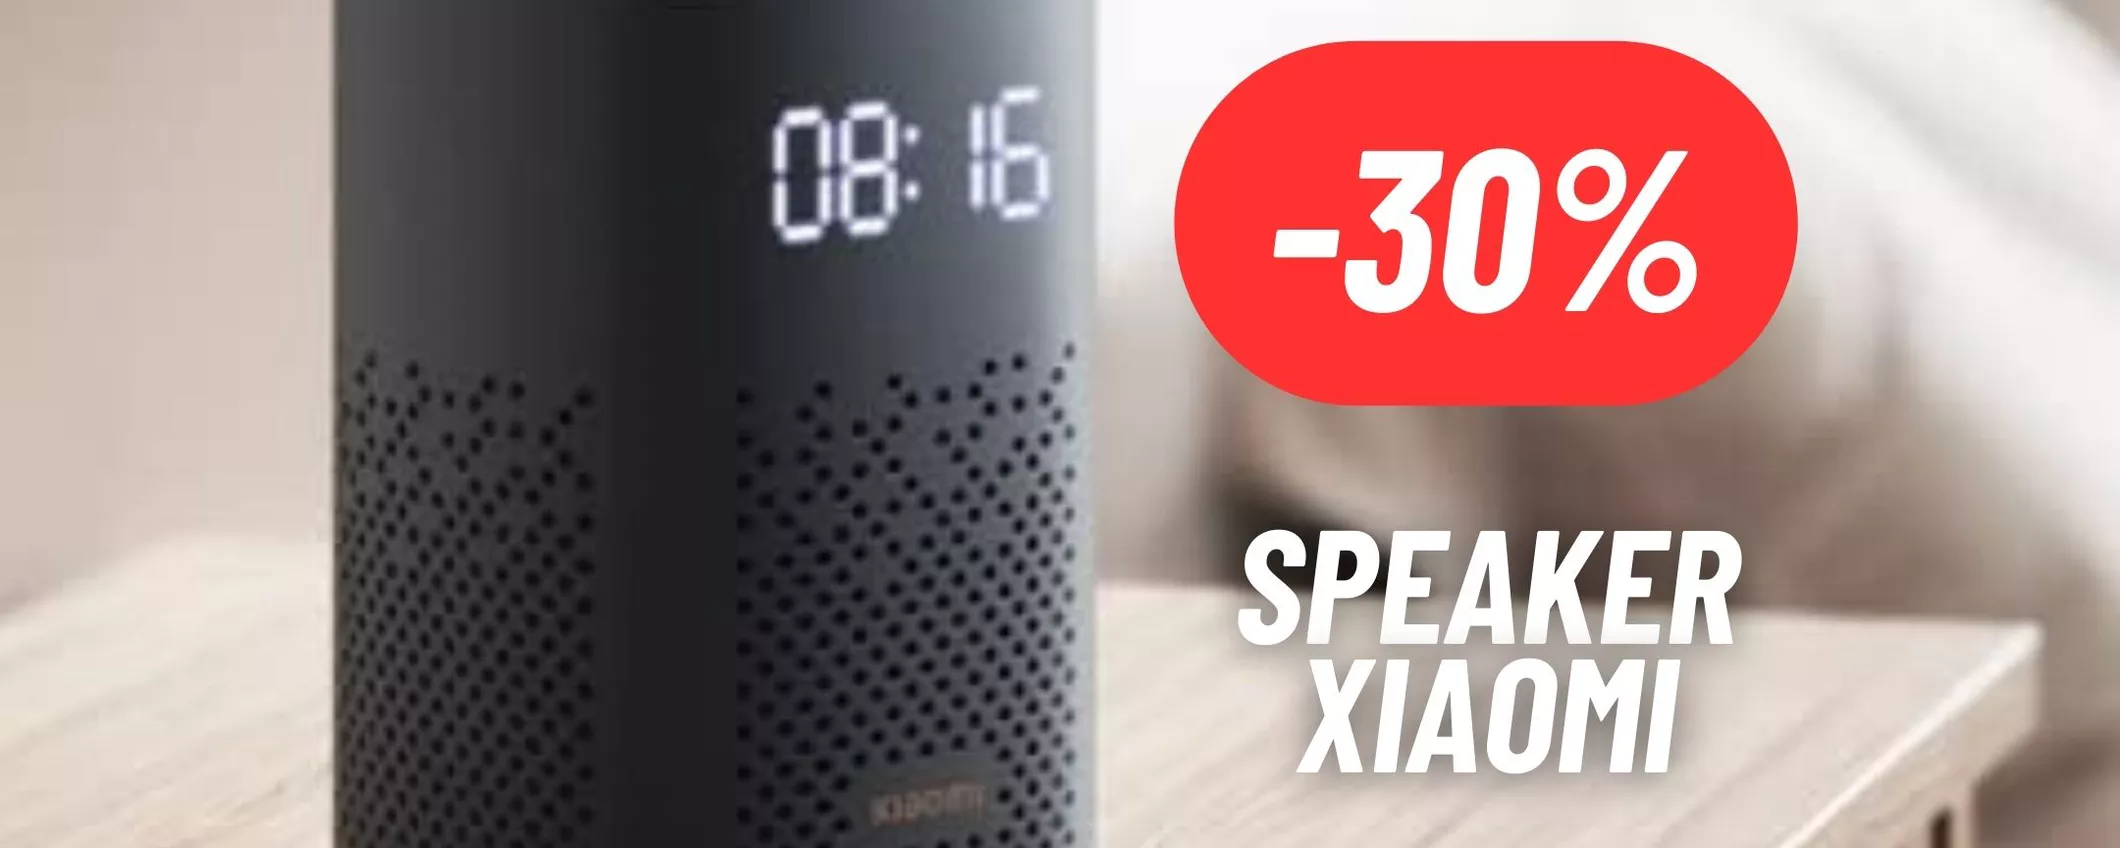 Speaker Xiaomi SCONTATISSIMO su Amazon: risparmia il 30%